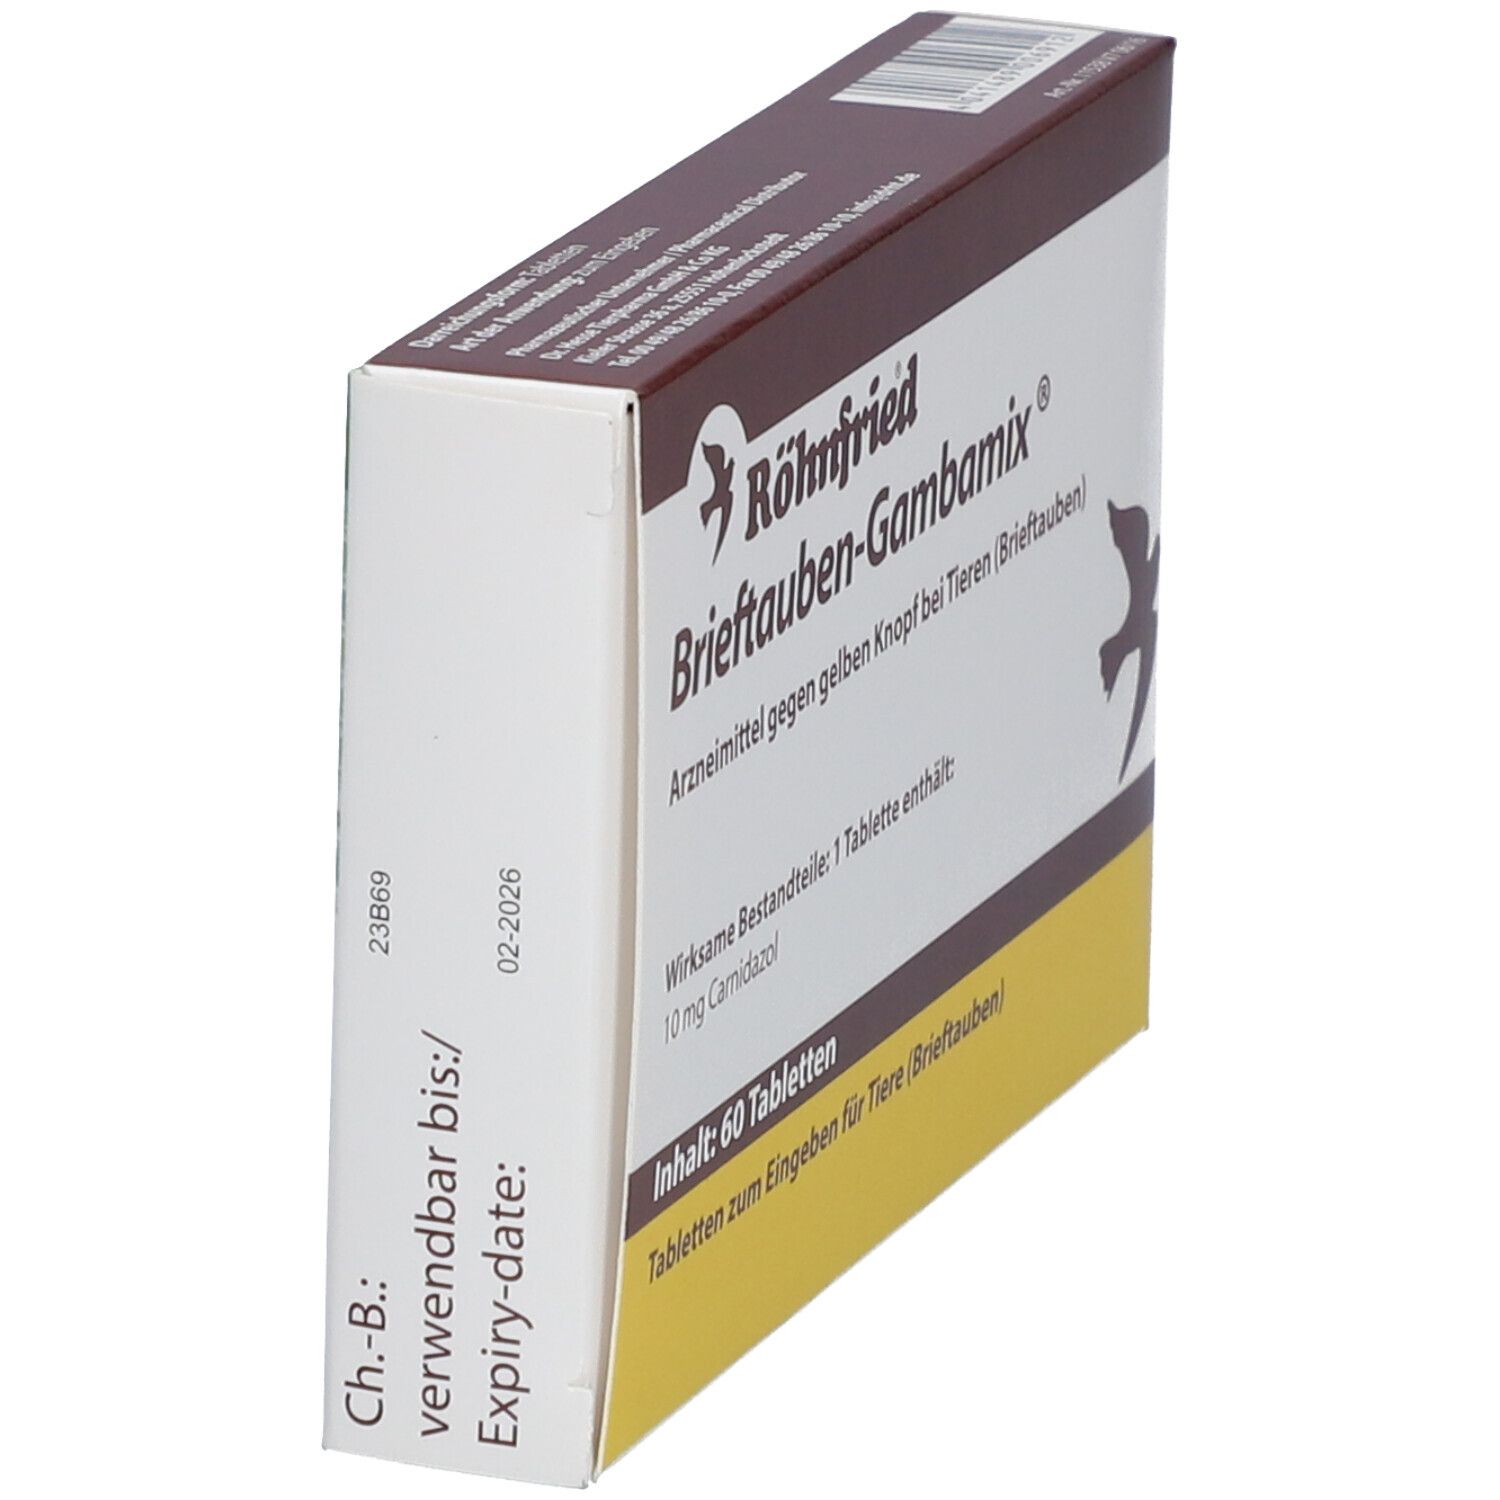 Brieftauben-Gambamix Tabletten